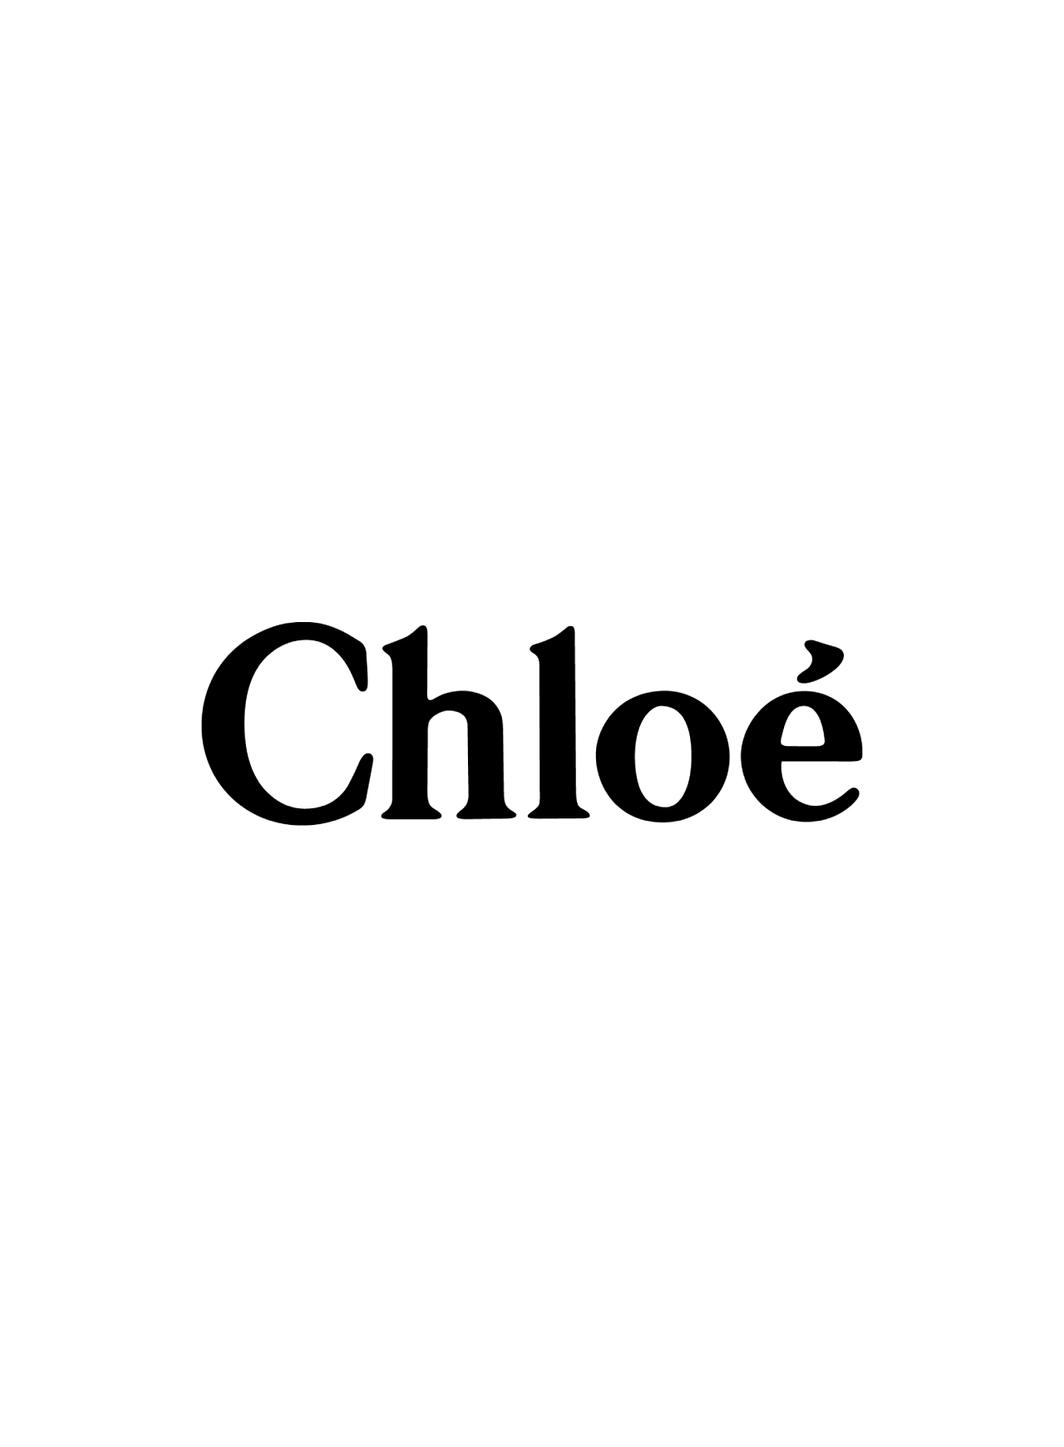 Chloé améliore la traçabilité de ses vêtements grâce à un Digital ID innovant.